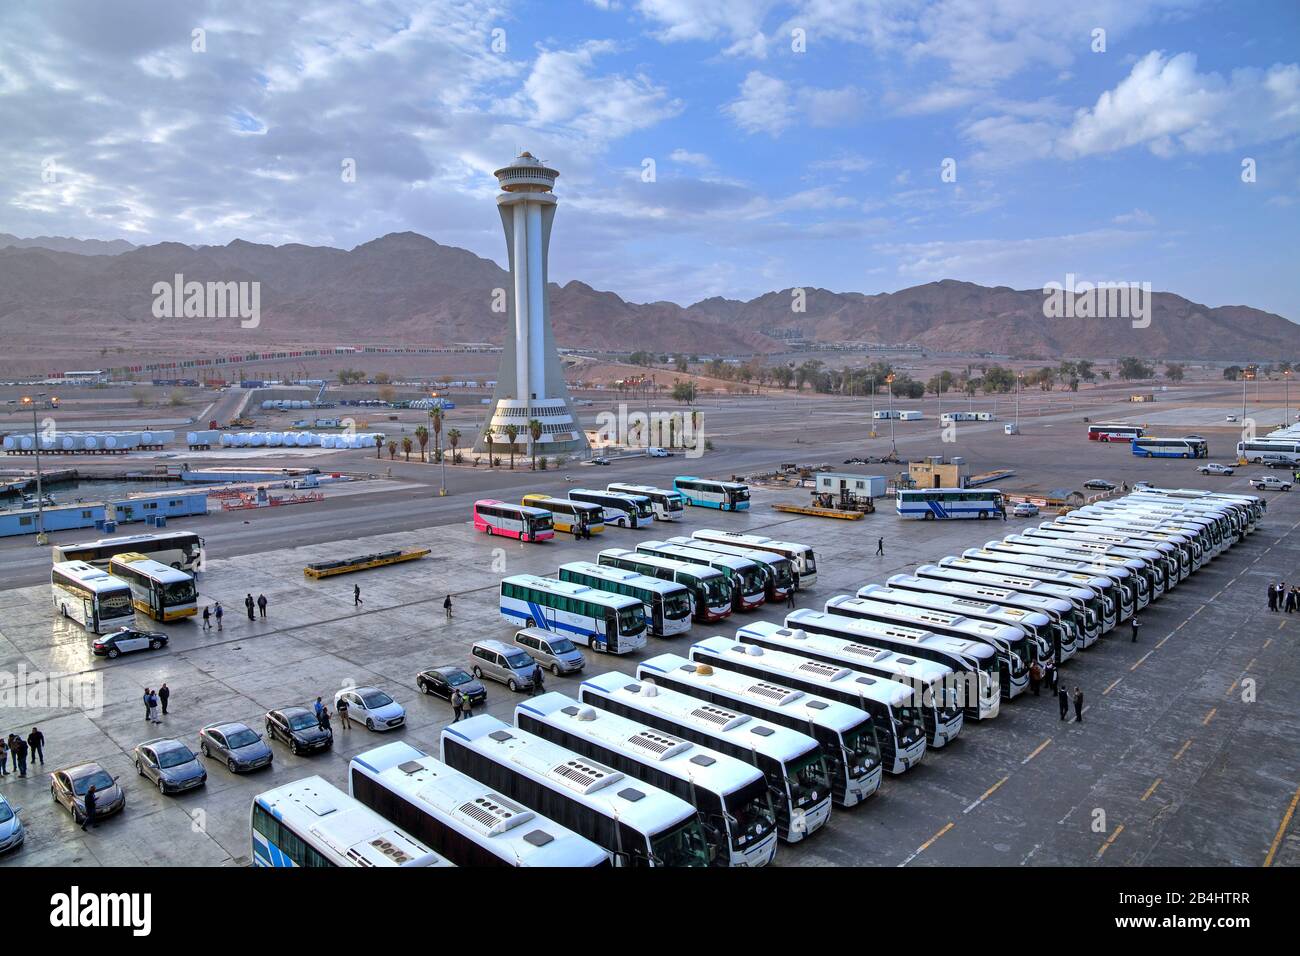 Bus d'excursion pour bateaux de croisière sur l'embarcadère du port d'Akaba Aqaba, Golfe d'Aqaba, Mer Rouge, Jordanie Banque D'Images